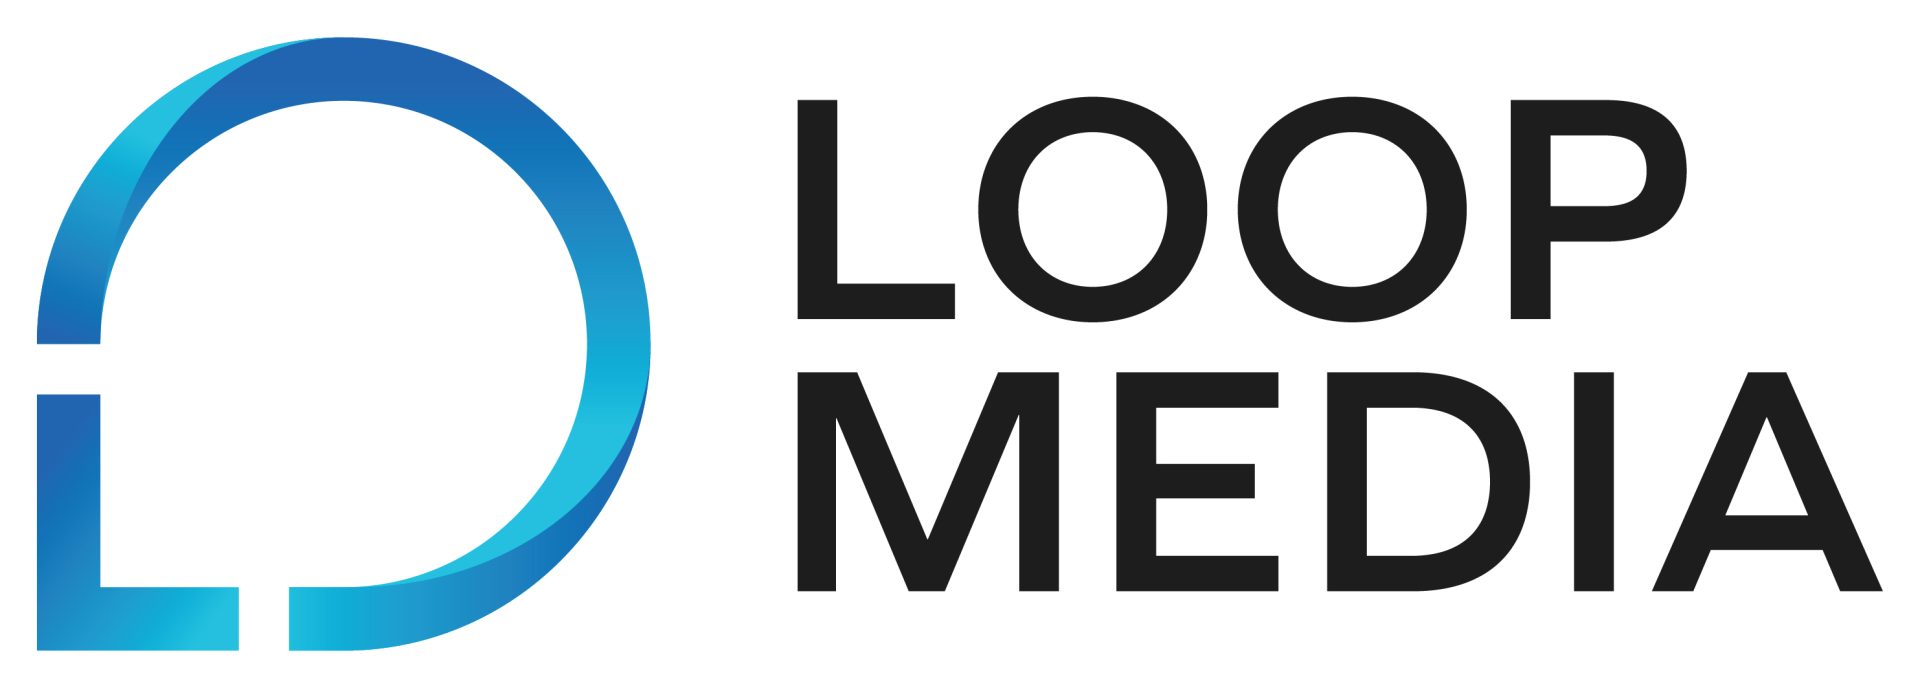 Loop Media Agency